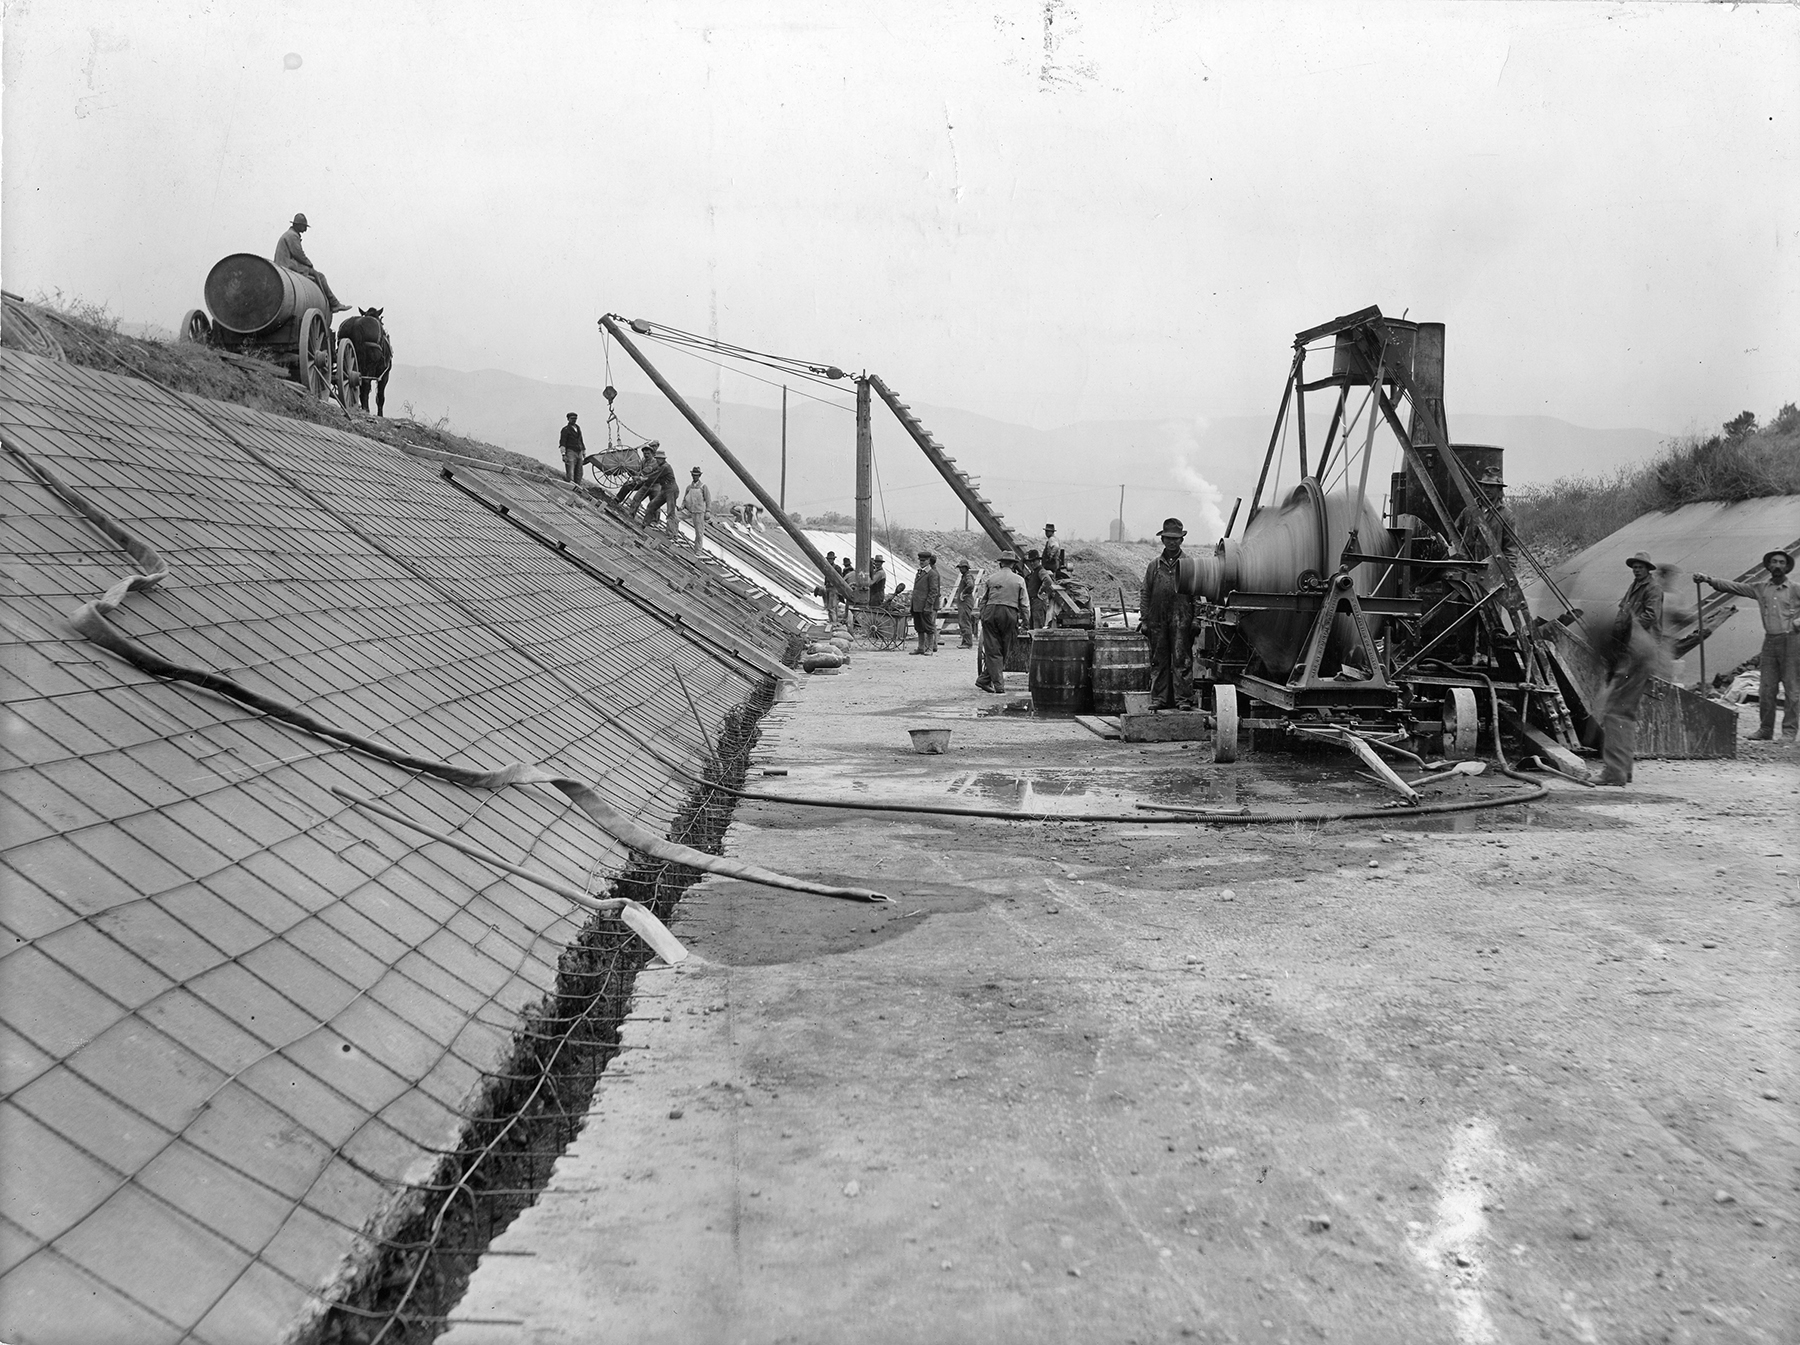 Relining New York Canal to repair break, 2 1/2 miles below headworks. Nov. 24, 1917